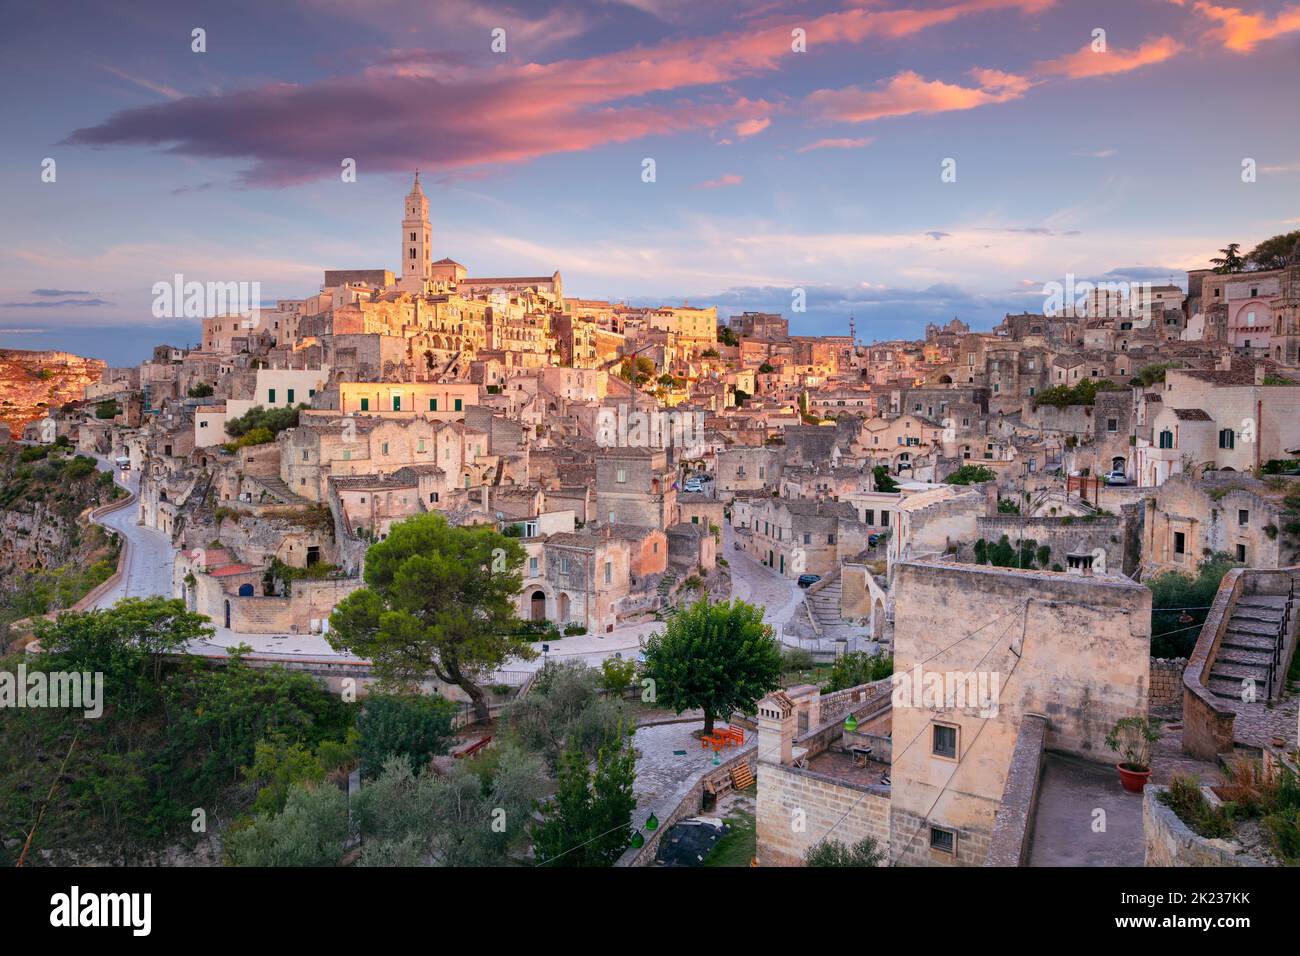 Miera, Italien. Stadtbild Luftbild der mittelalterlichen Stadt Matera, Basilicata Italien bei schönem Sommeruntergang. Stockfoto